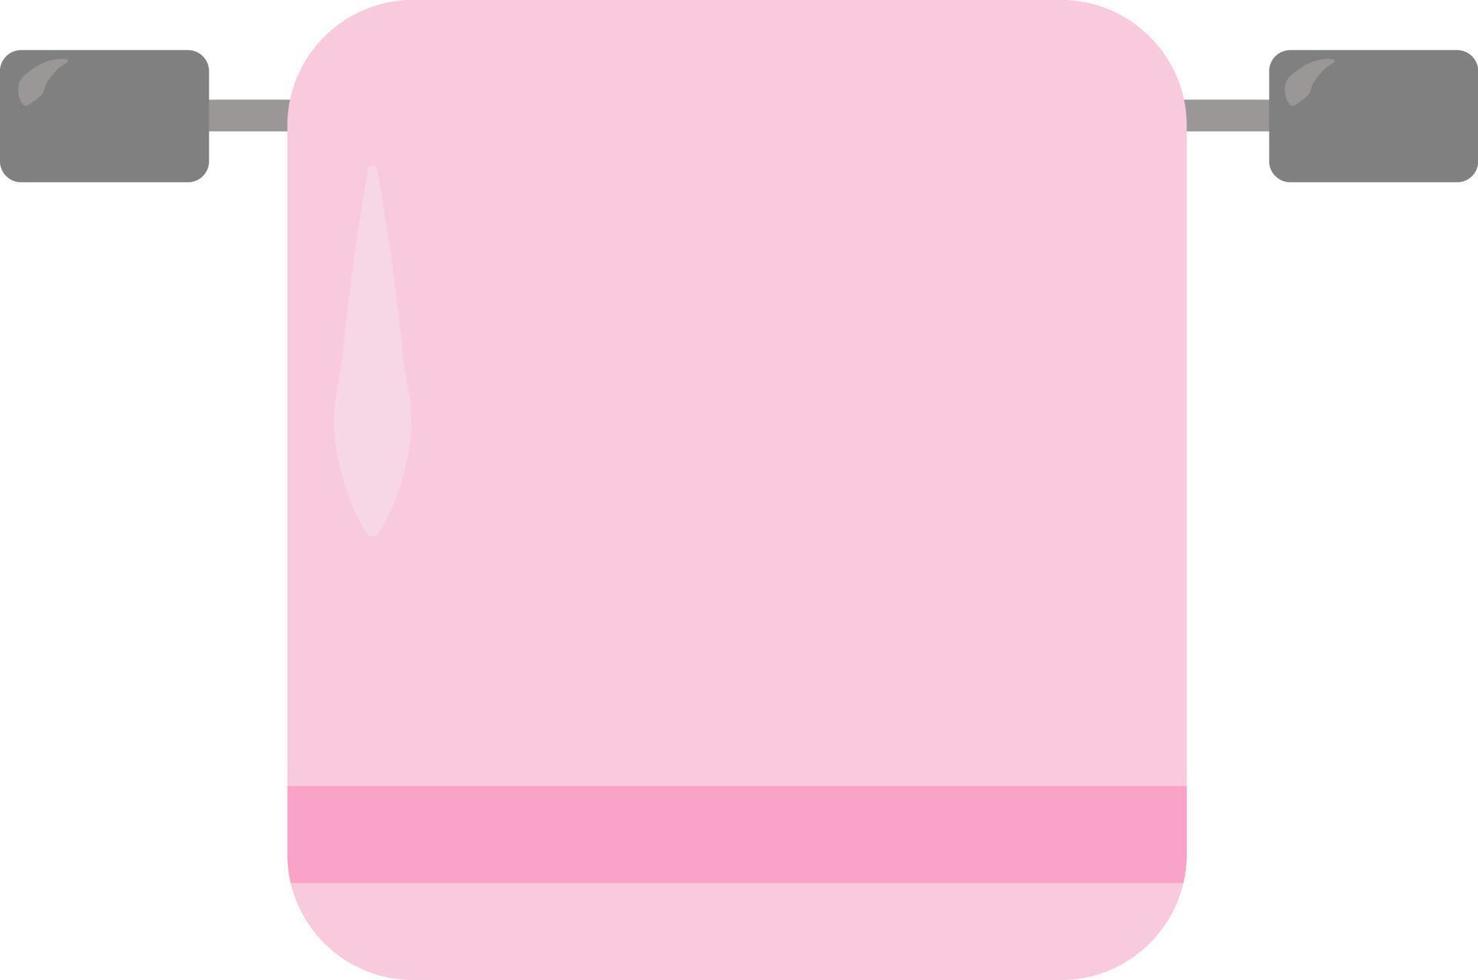 serviette rose, illustration, vecteur sur fond blanc.